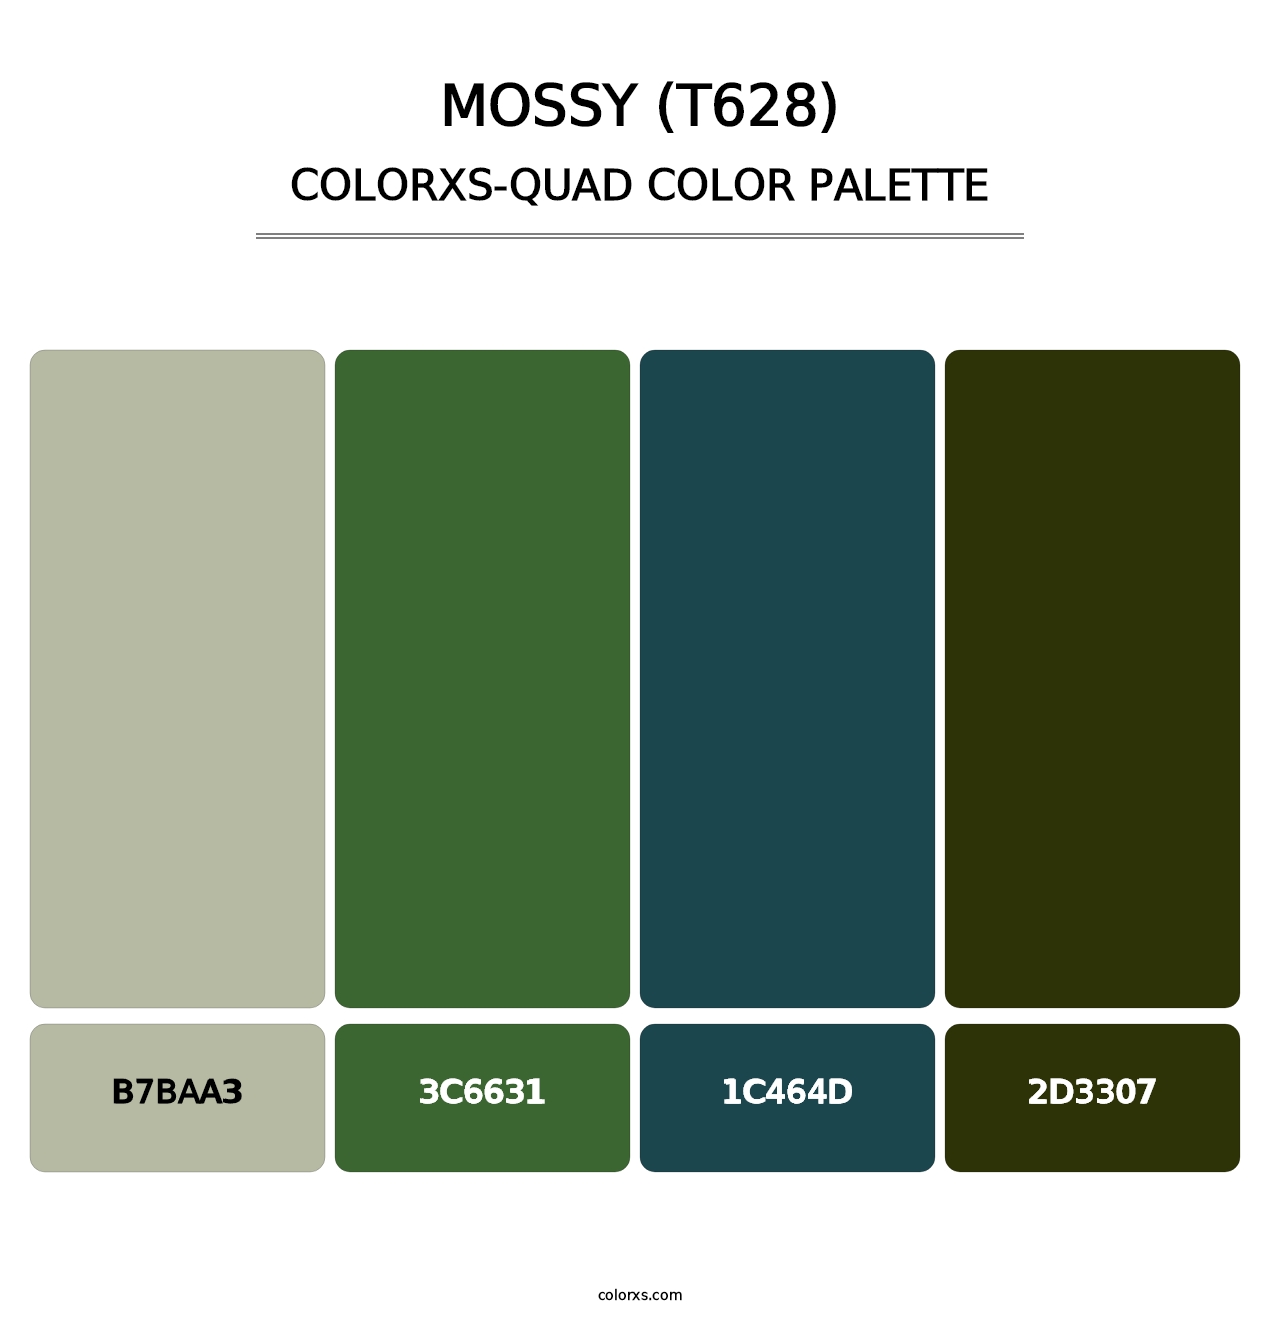 Mossy (T628) - Colorxs Quad Palette